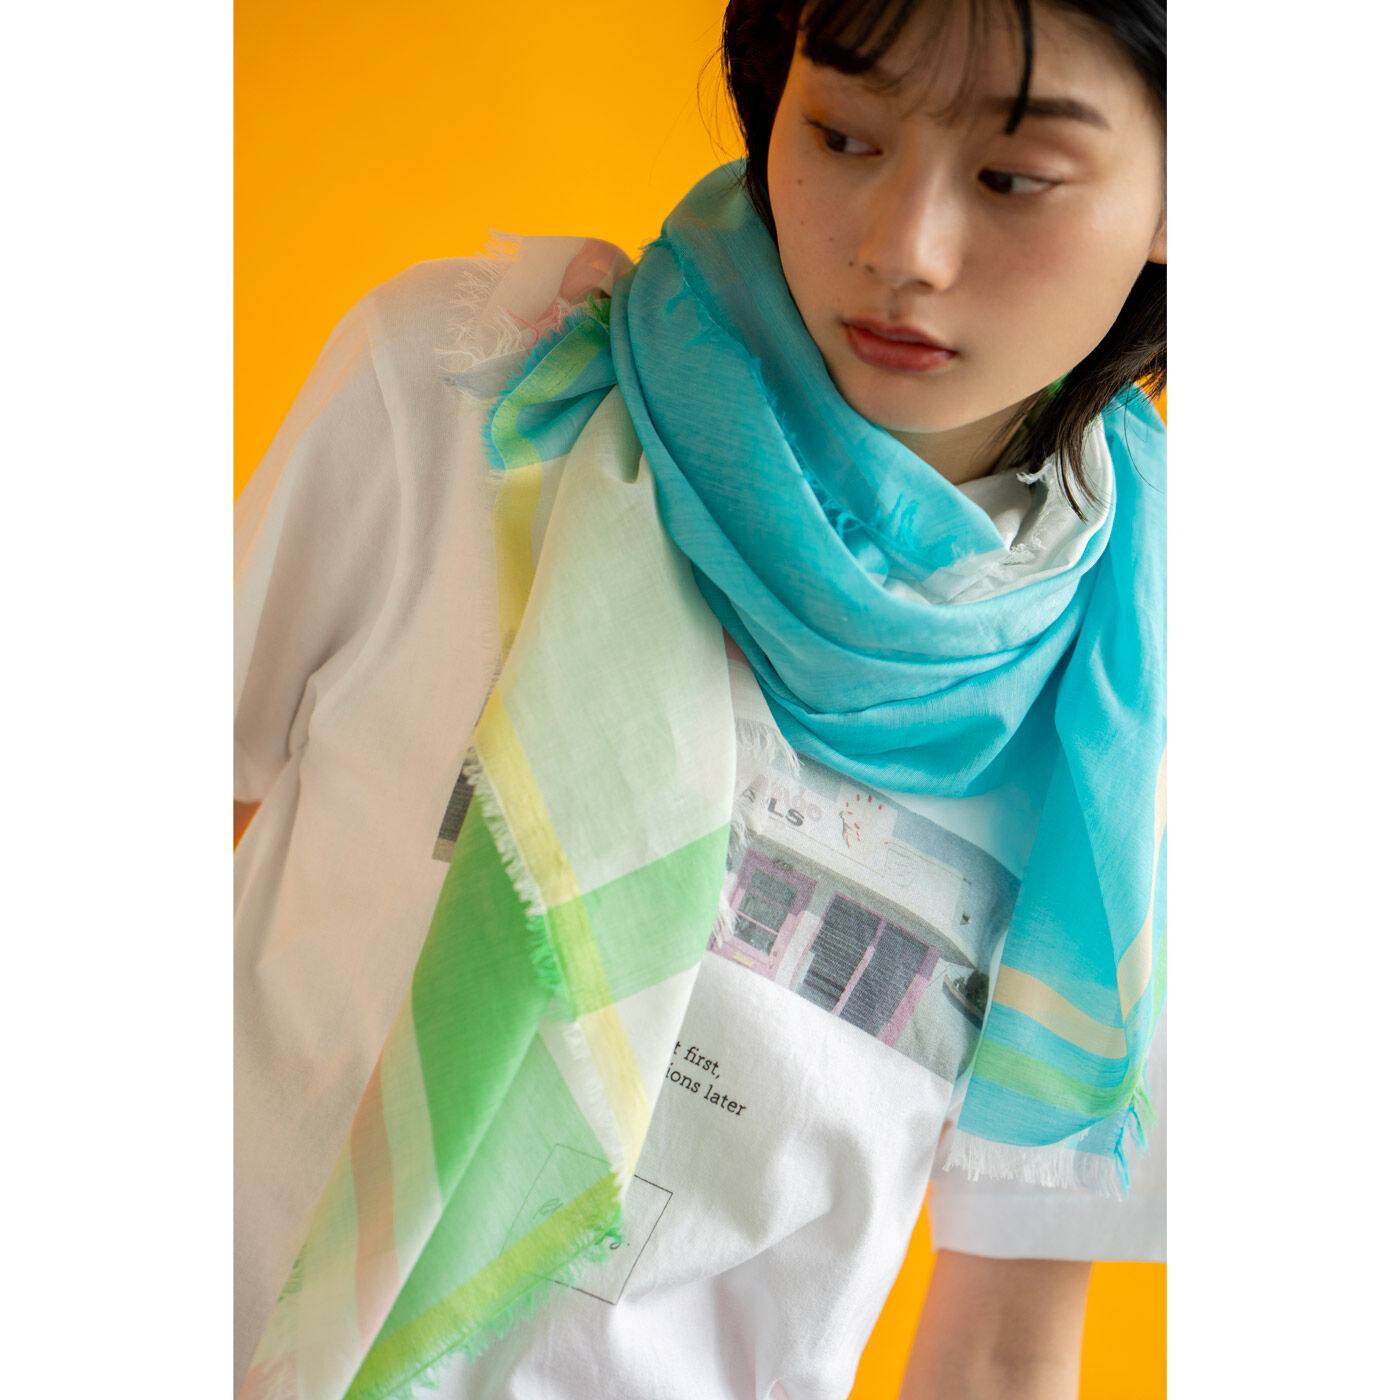 ＆Stories|テキスタイルデザイナーと作った 播州織のそよ風みたいなストール〈カプリマリンブルー〉|巻き方によっていろいろな色や柄が現れて、着こなしを彩ります。